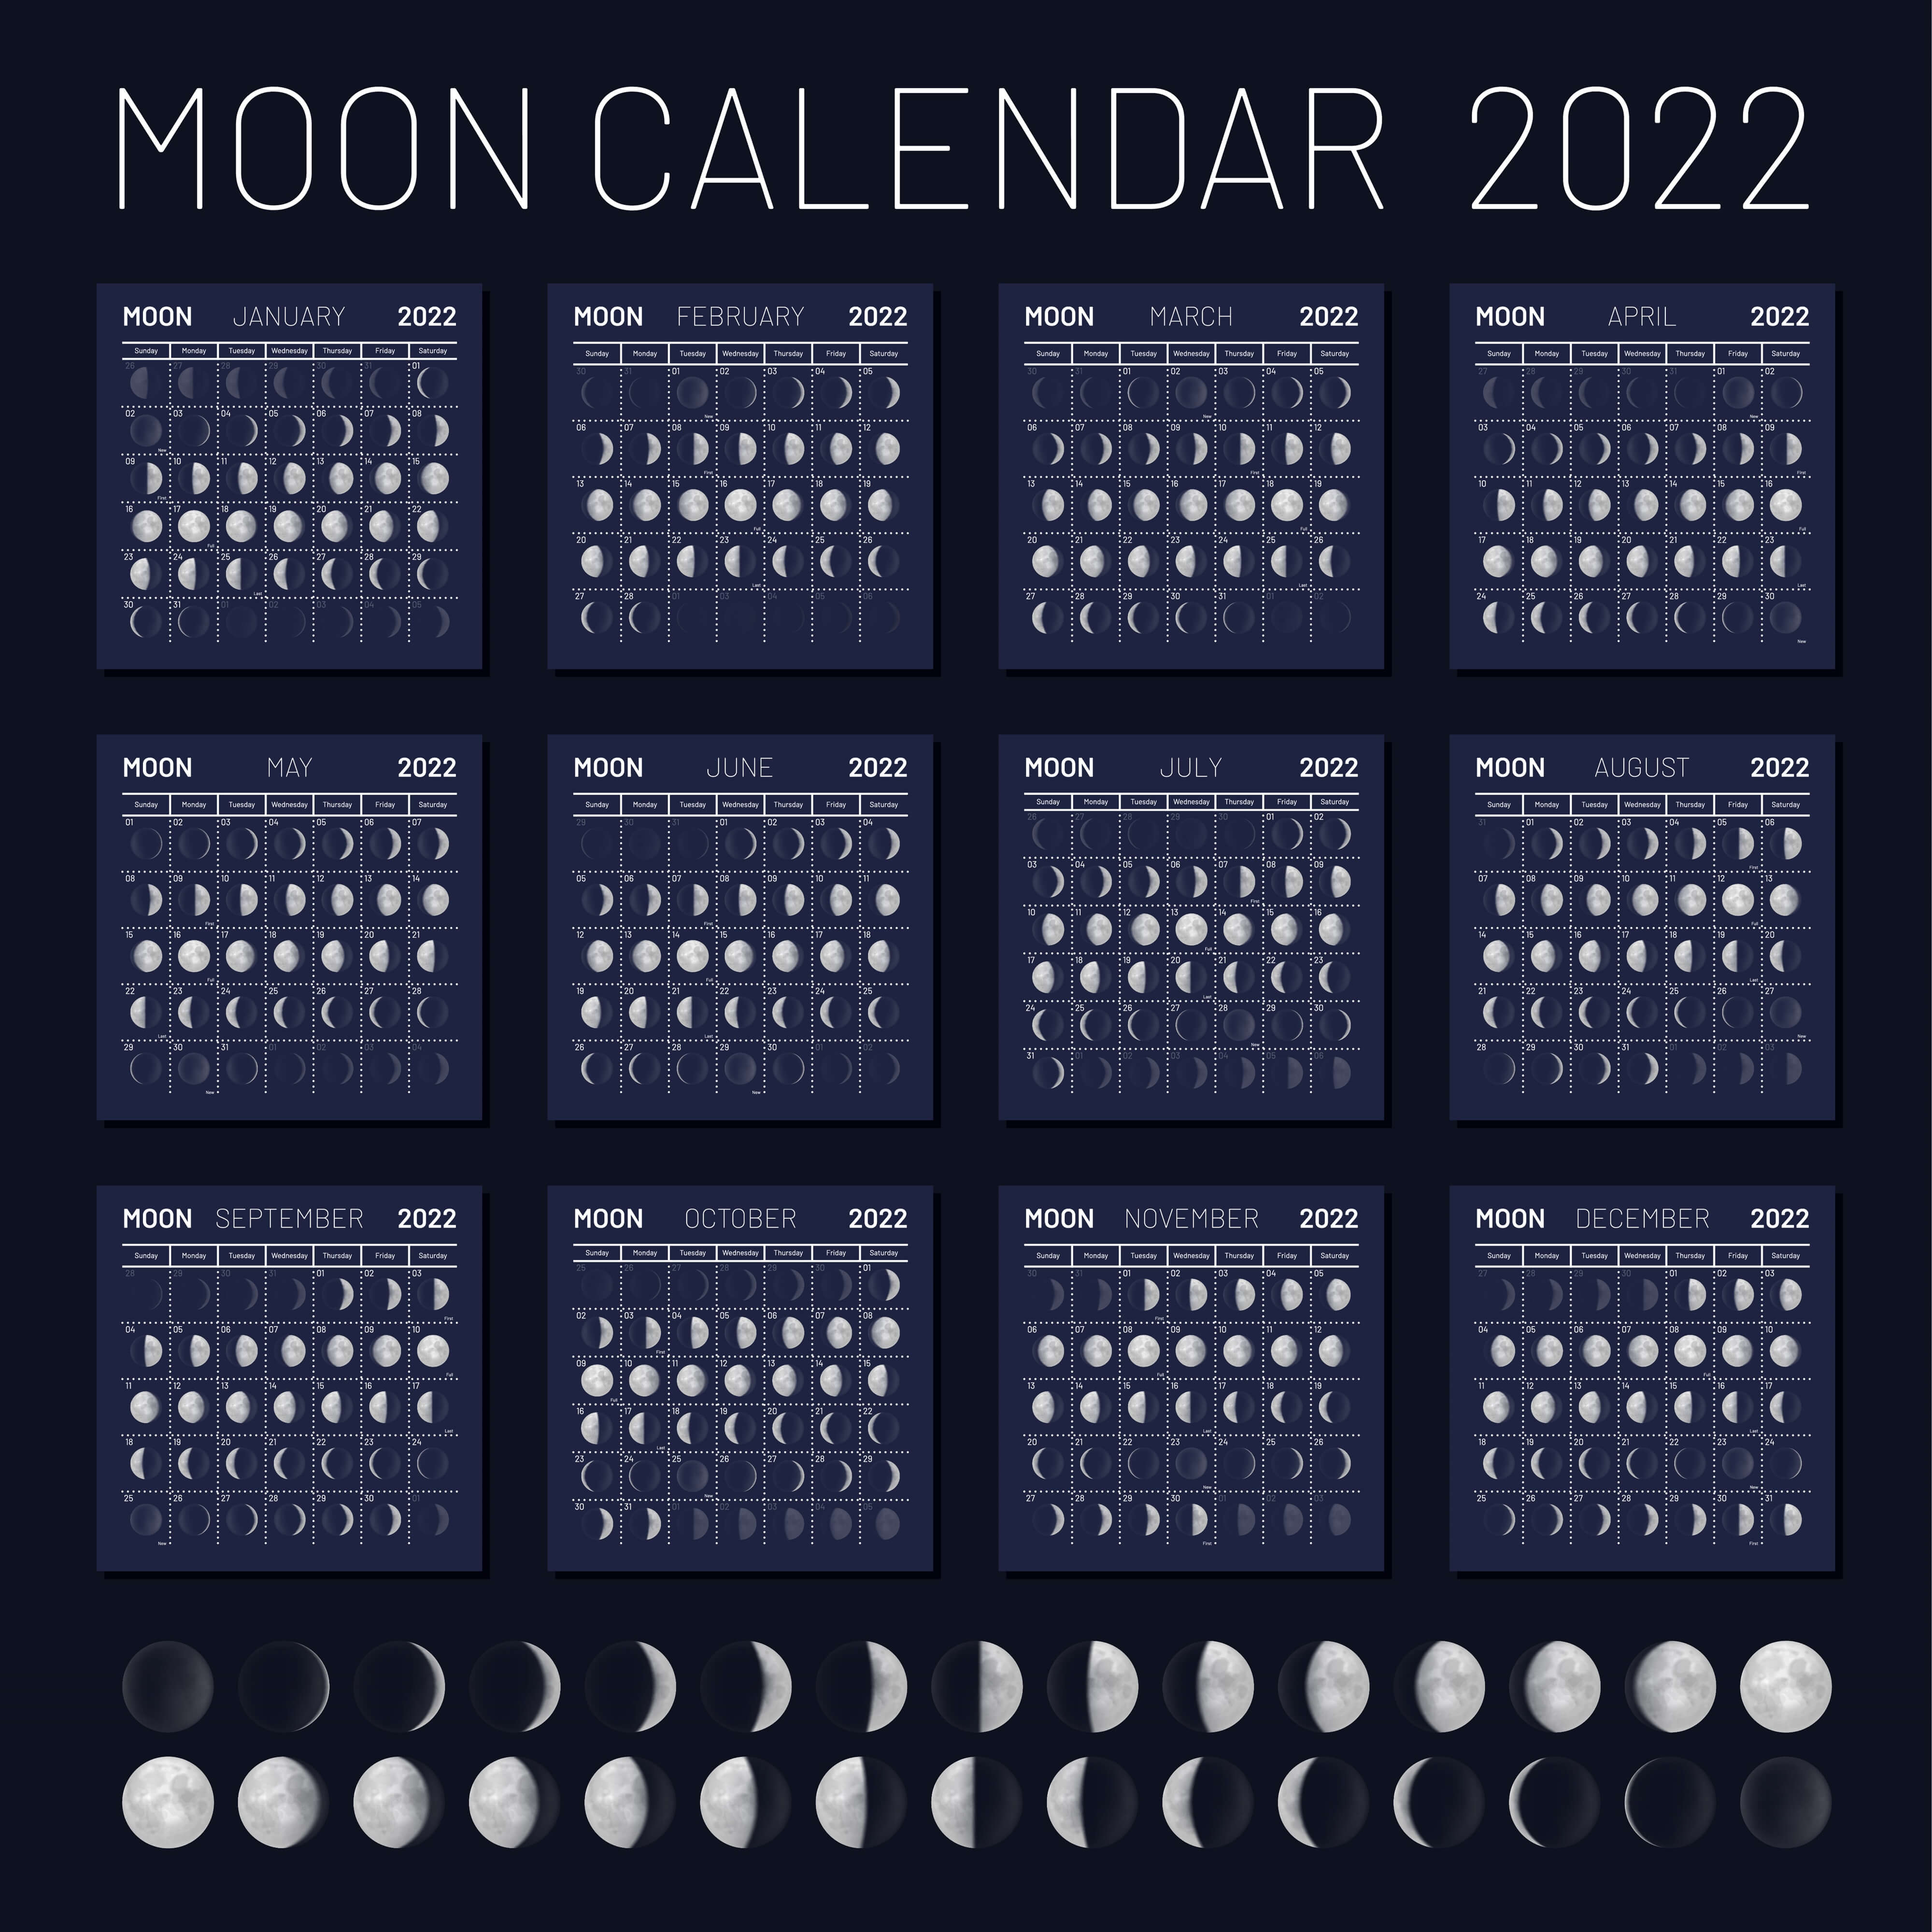 Лунный календарь на март 2024 микрокосма. Moon phases Lunar Calendar 2022 год. Календарь 2022 Луны лунный. Moon Calendar 2022 Lunar Calendar 2022. Календарь фаз Луны на 2022 год по месяцам.